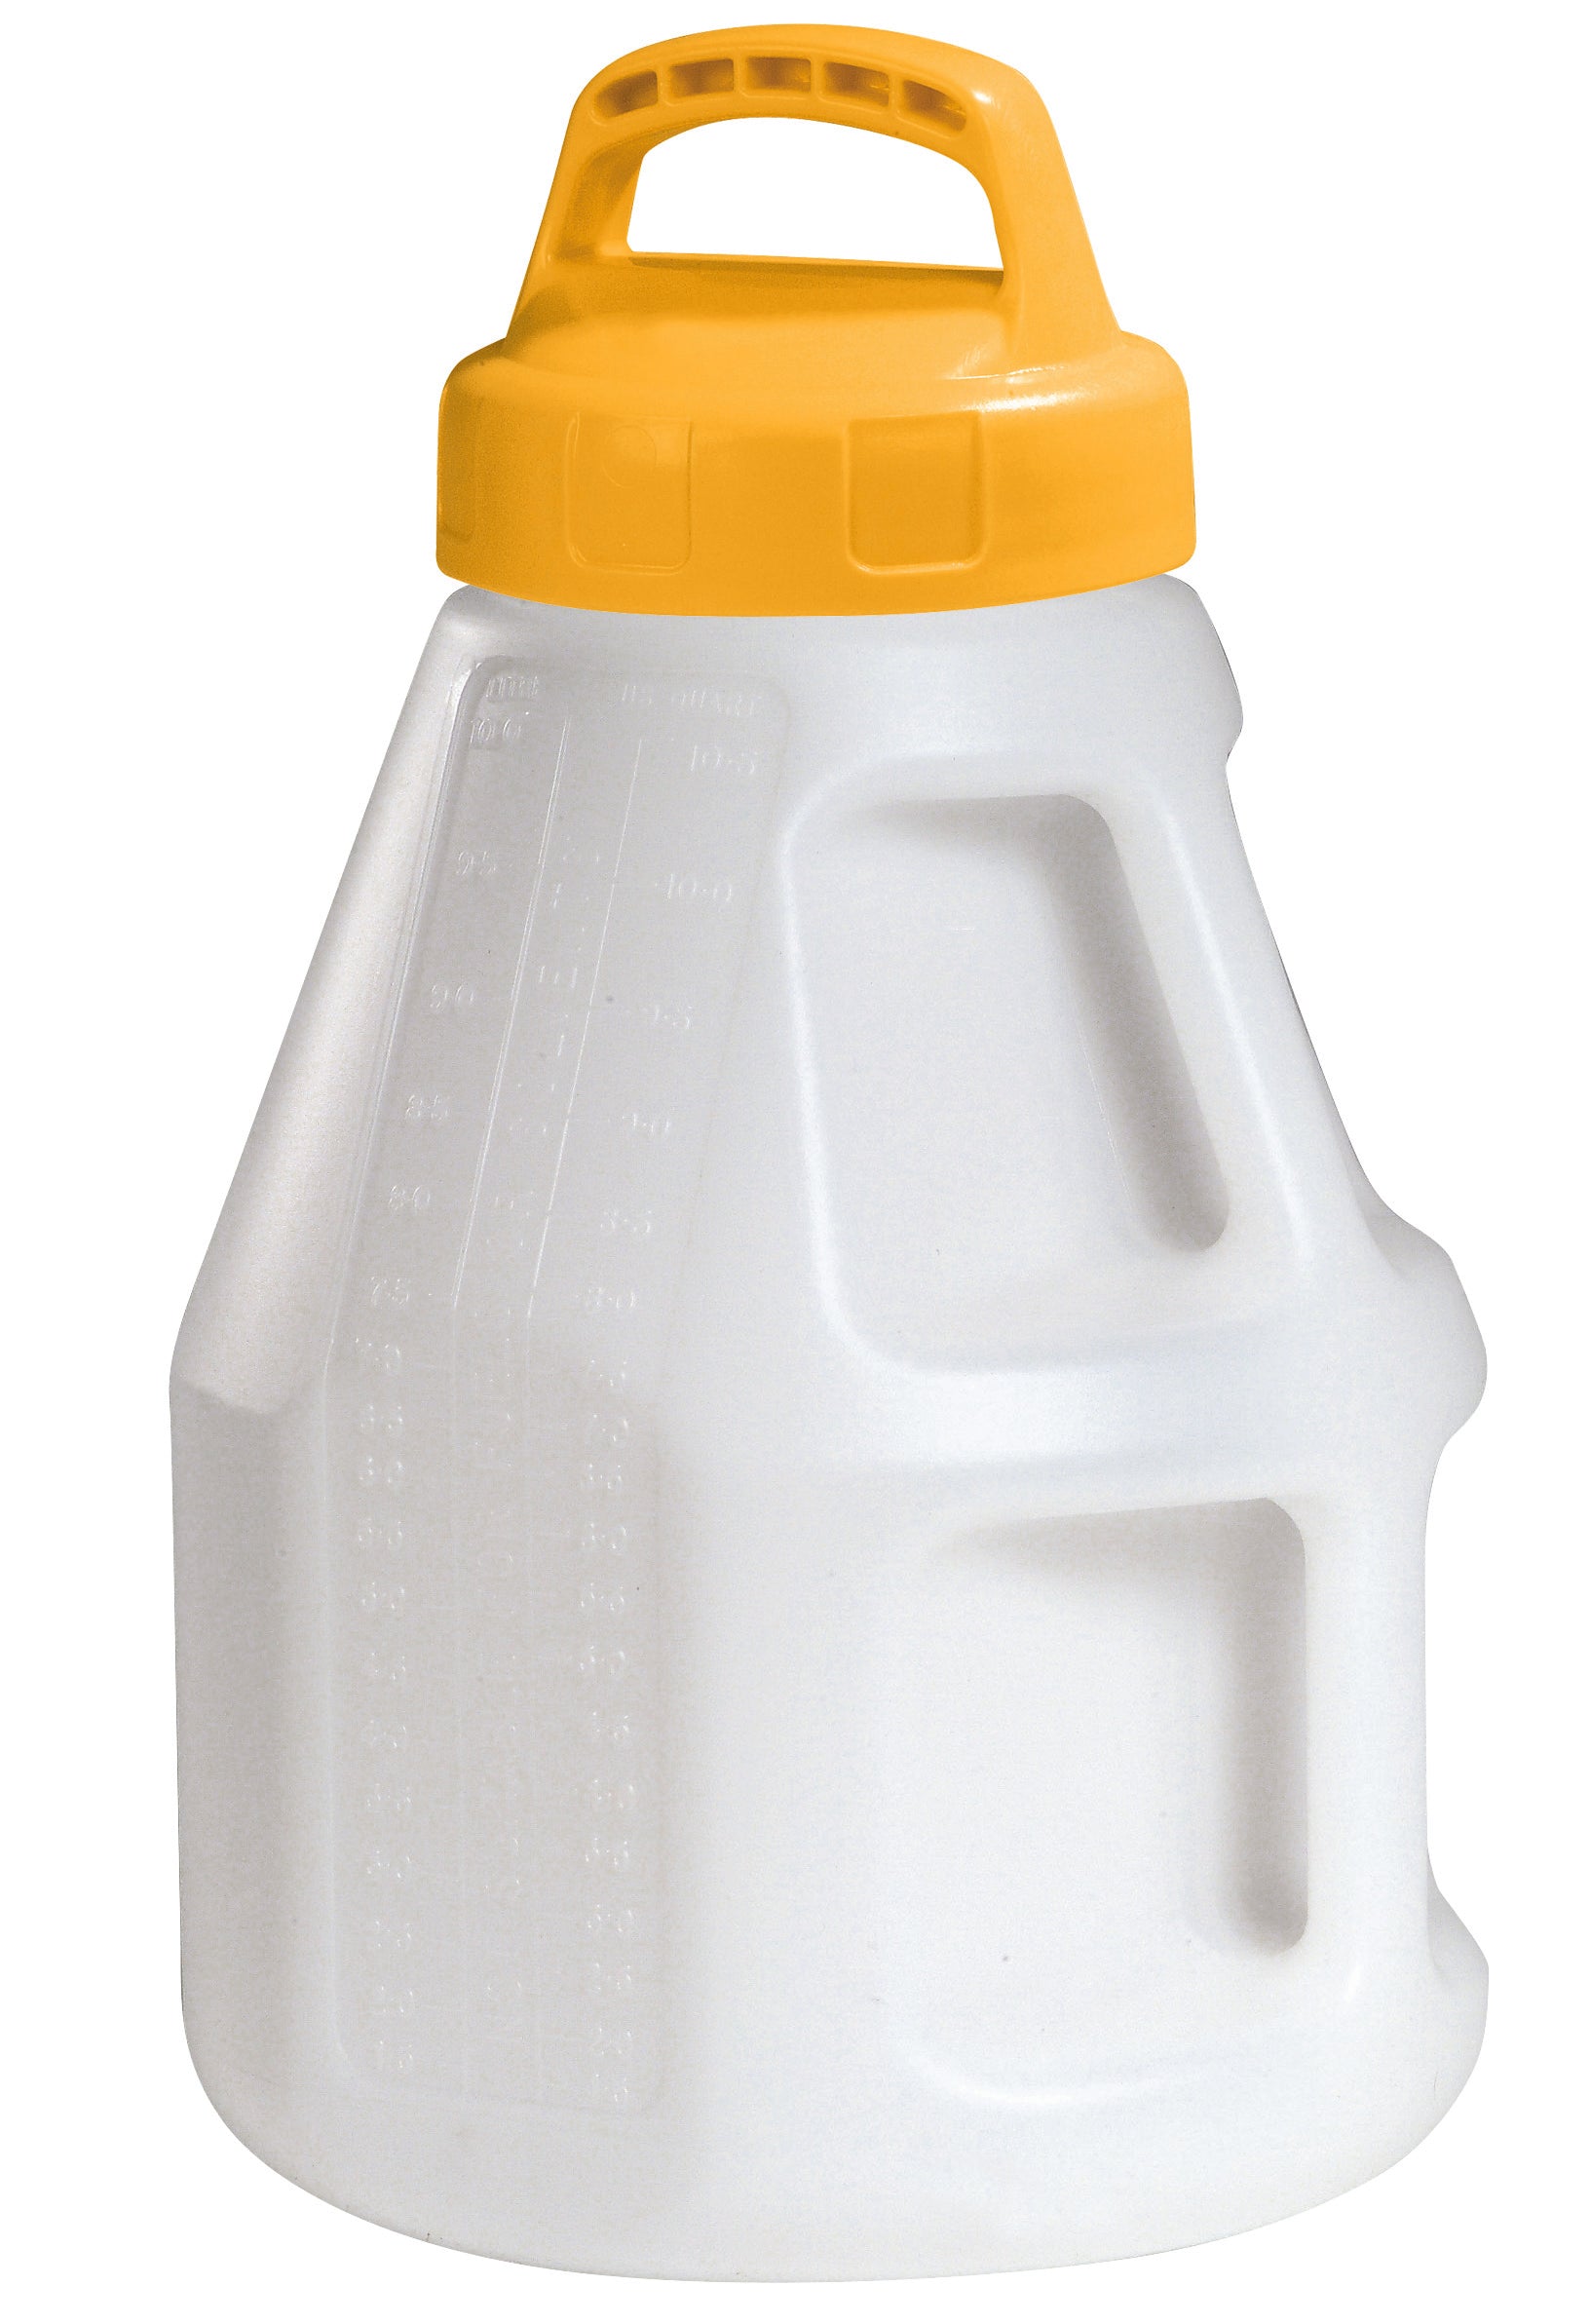 Öl-Kanne aus HDPE 10 Liter mit gelbem Lagerdeckel, Polyethylen (high density)